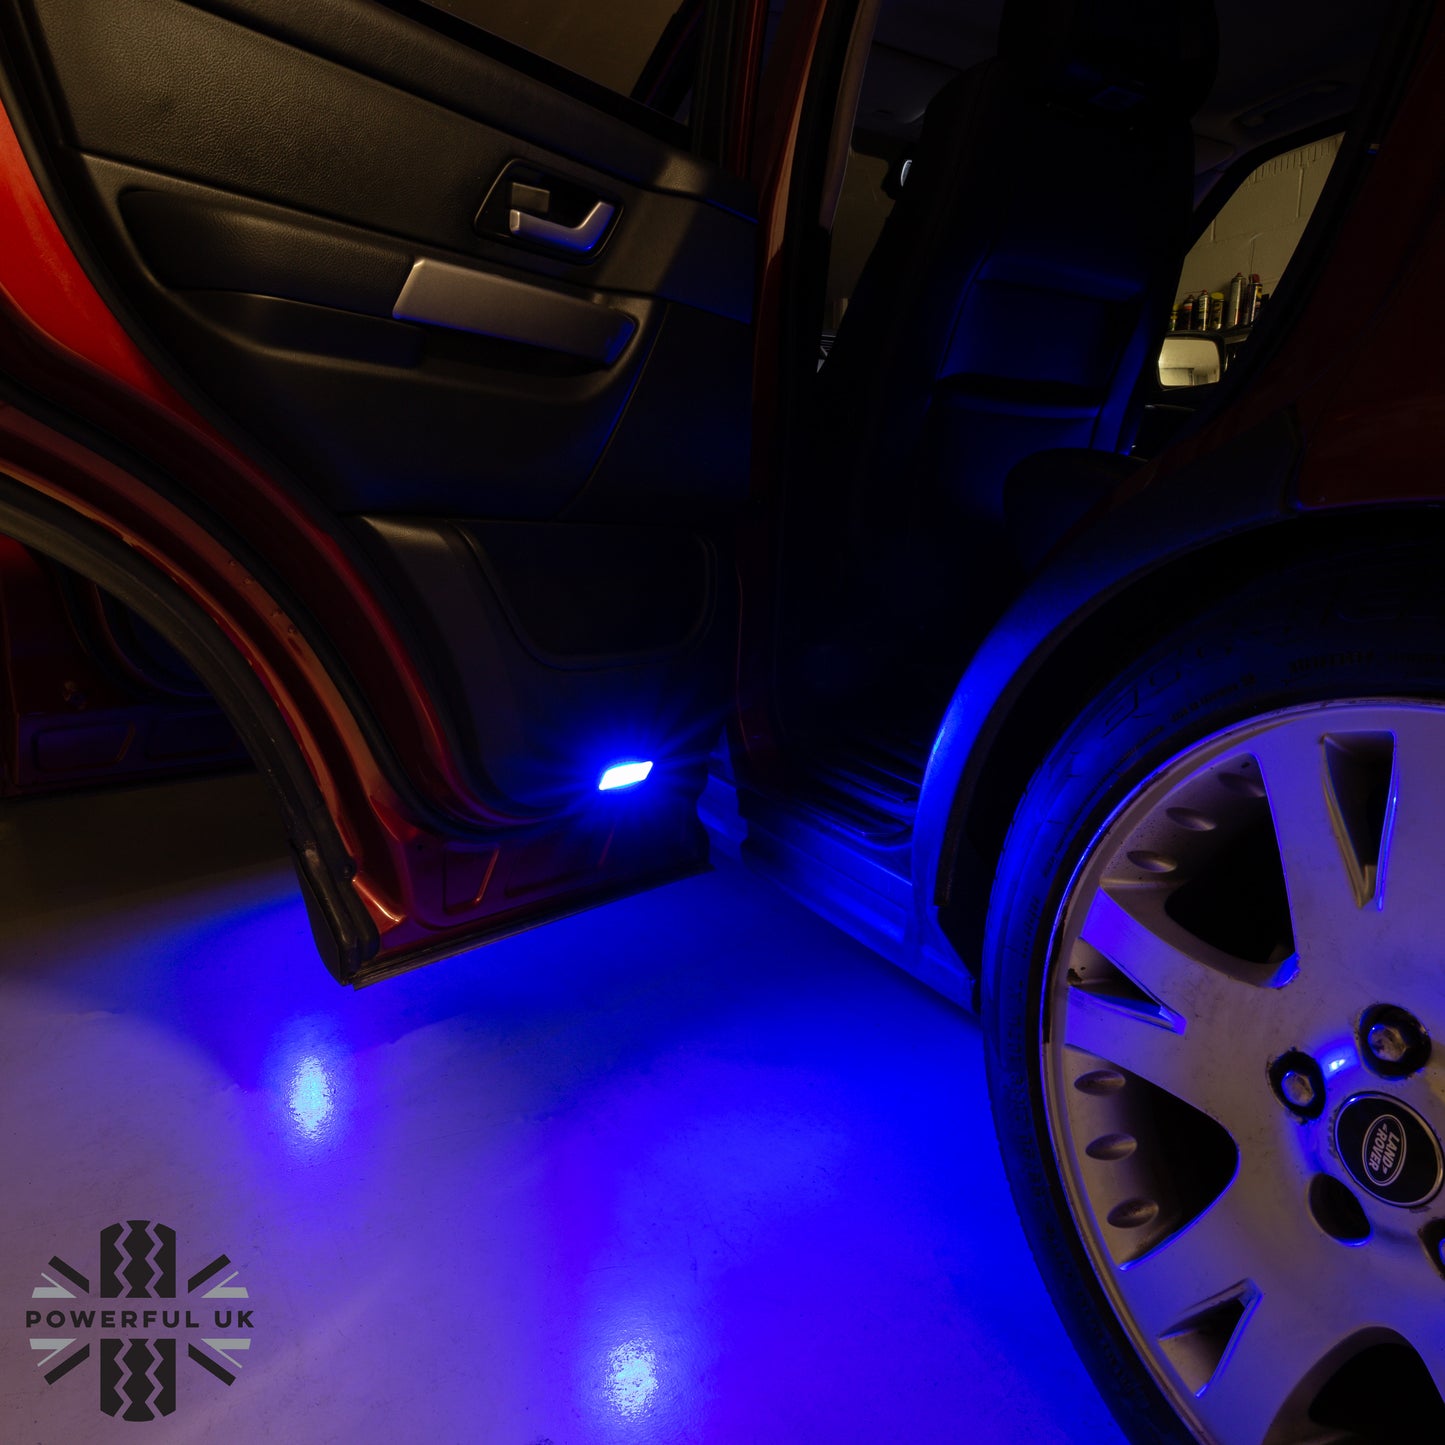 LED Interior Light Kit in White & Blue for Range Rover Sport (14pc) 2005-2013